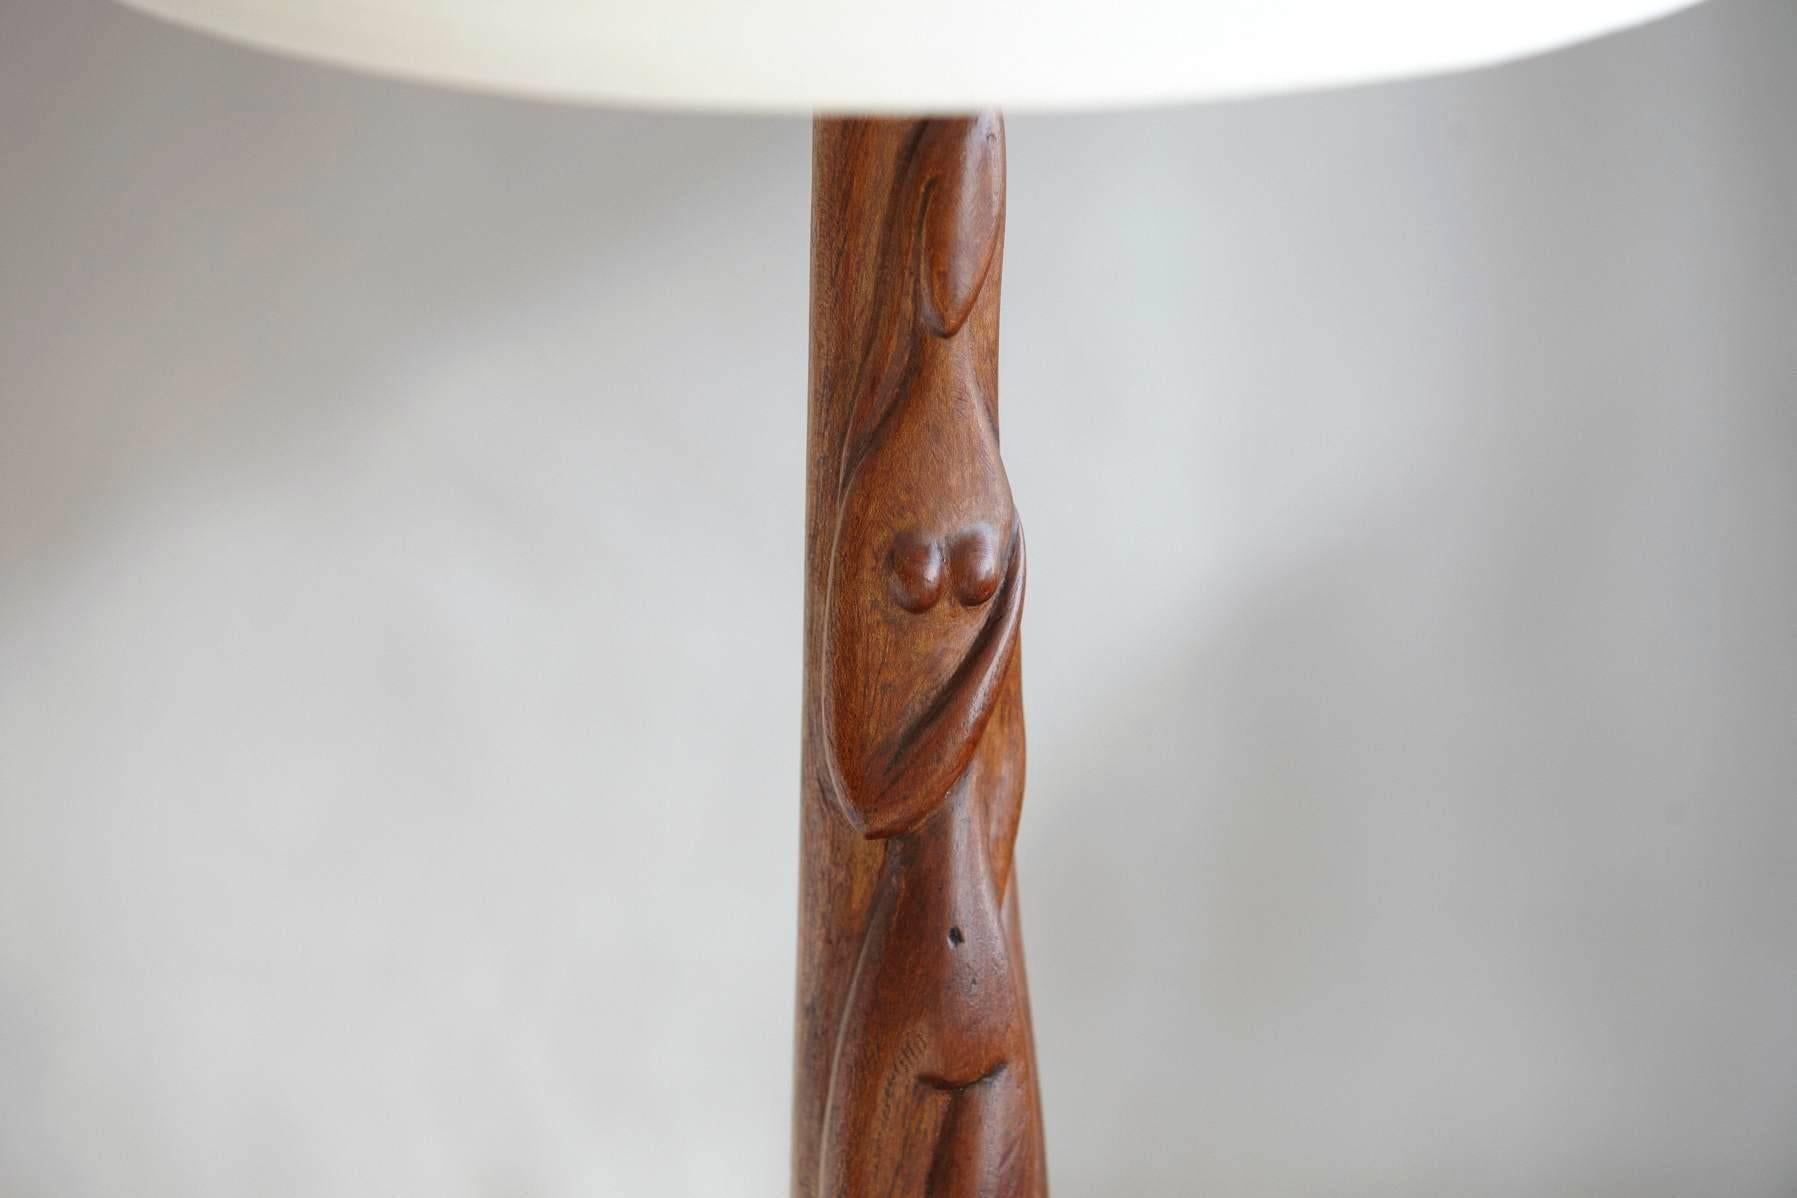 Schöne handgeschnitzte weibliche Akt-Holz-Skulptur-Tischlampe mit getöntem schwarzem Holzsockel, von Nicholas (Nimo) Mocharniuk (Russisch/Amerikaner 1917-1993), auf der Rückseite signiert NIMO.
Der skulpturale Stiel ist in ausgezeichnetem Zustand,